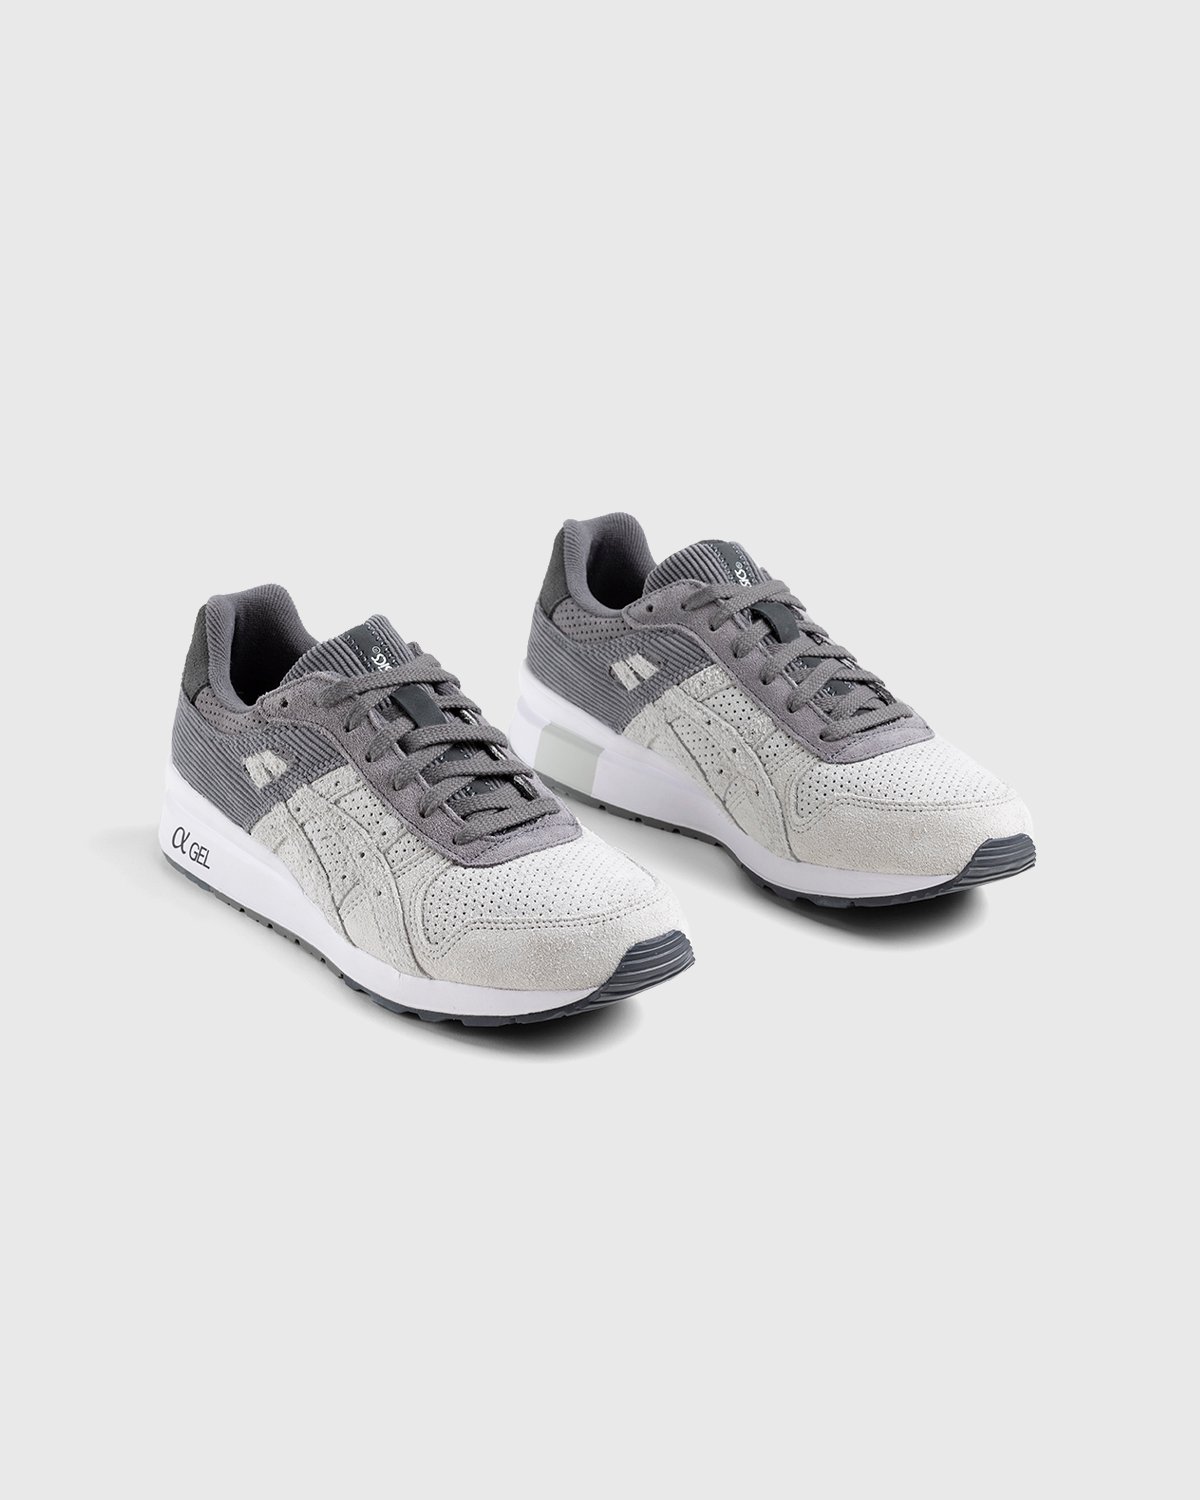 asics x Afew - GT-II Polar Shade/Carbon - Footwear - Grey - Image 3